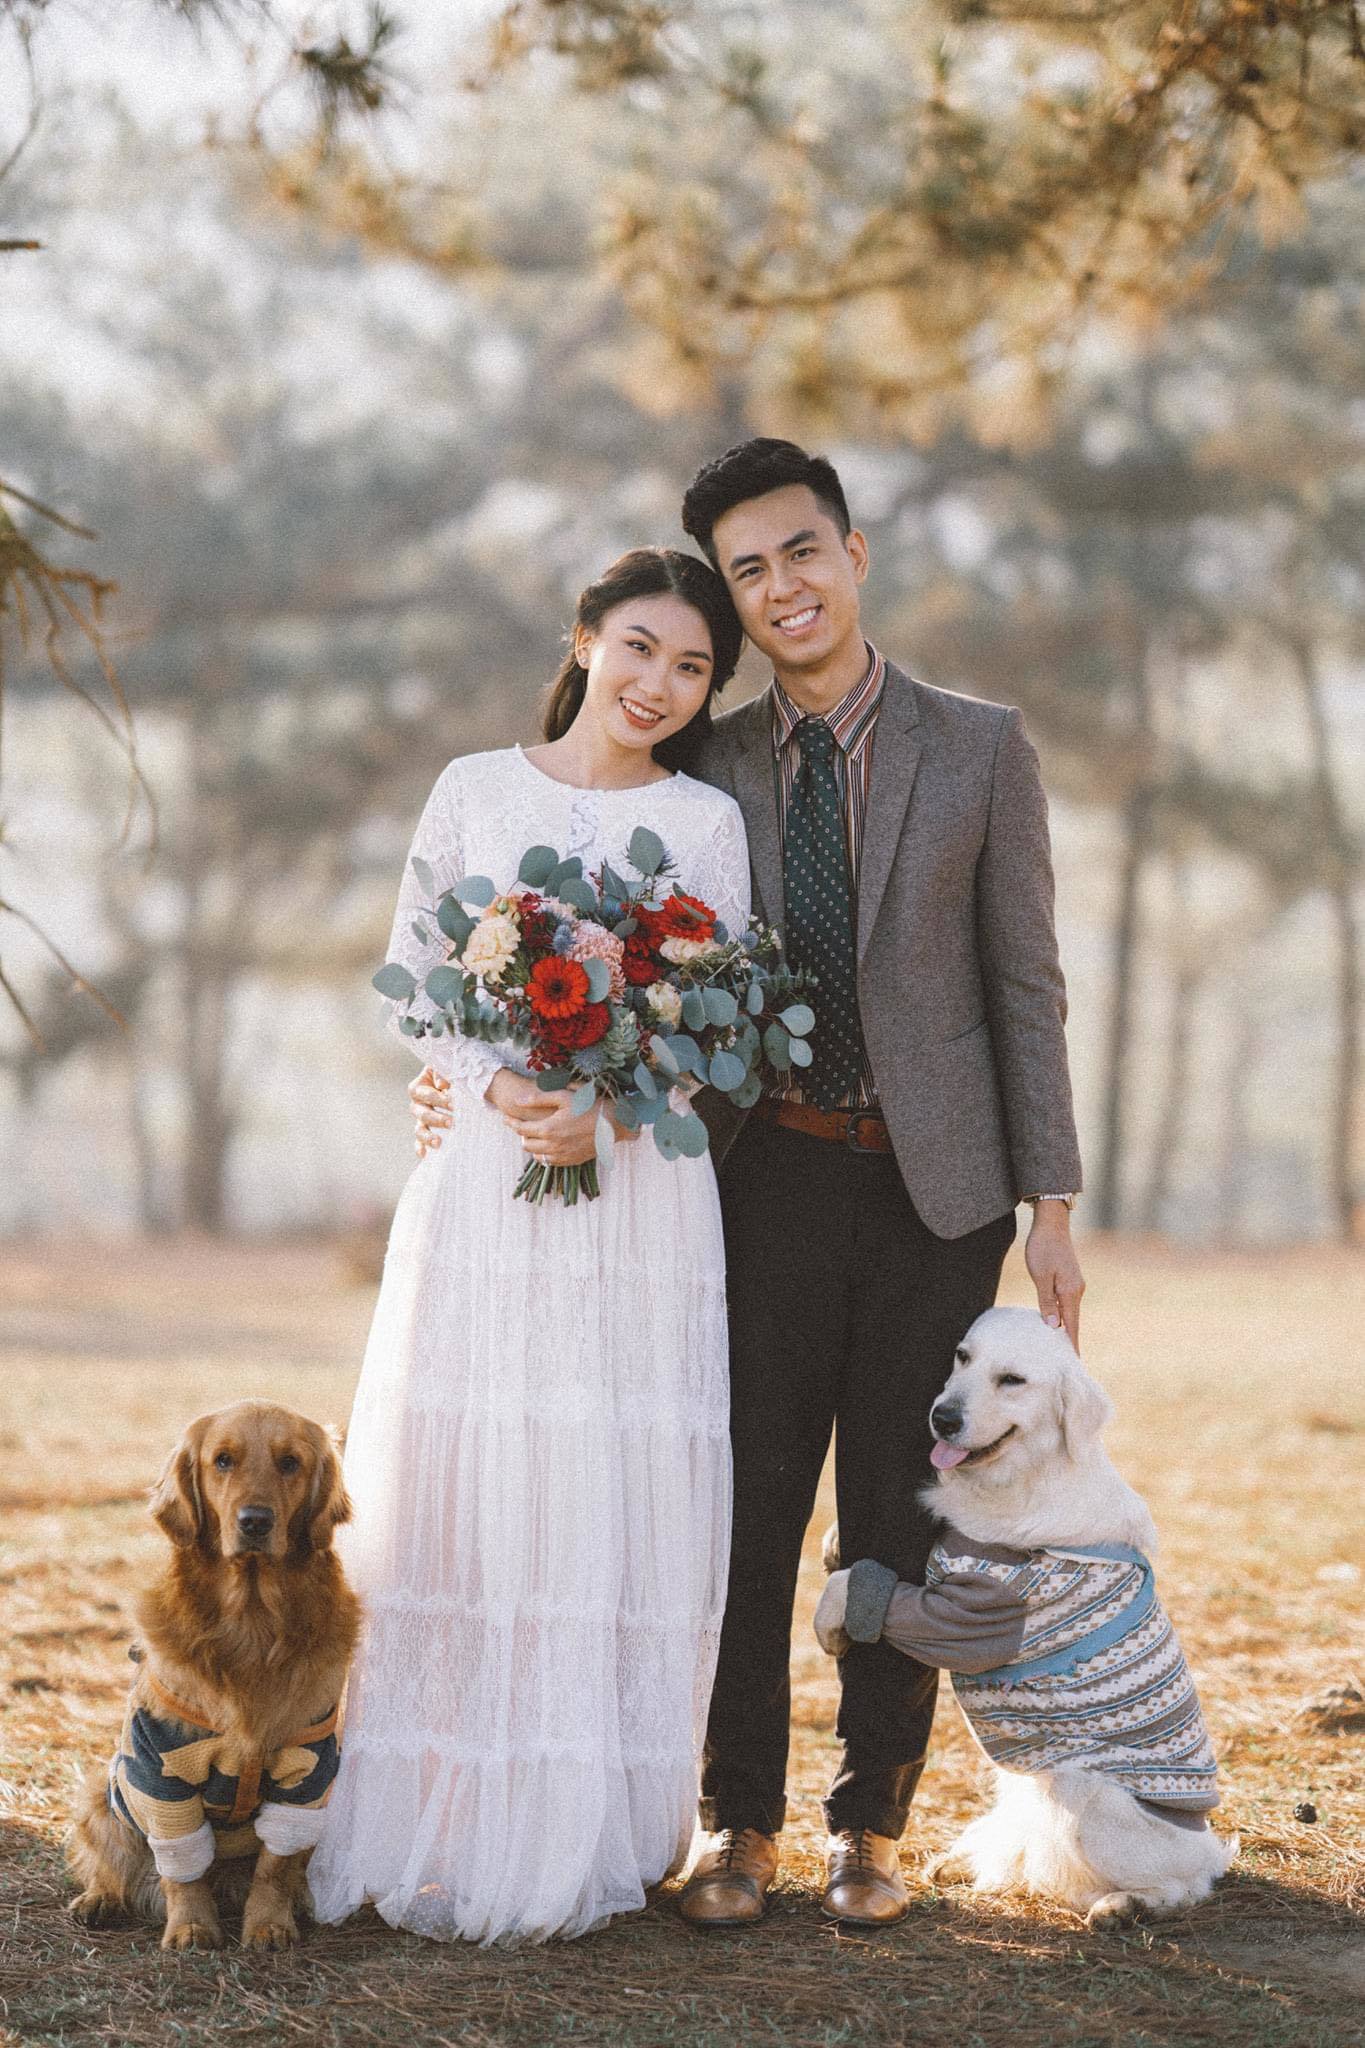 Ảnh cưới với cún cưng: Có cún cưng bên mình trong bộ ảnh cưới không chỉ mang đến sự đáng yêu, hồn nhiên mà còn tạo nên một cuộc sống gia đình đầy hạnh phúc. Bộ ảnh cưới với cún cưng sẽ là một kỷ niệm đáng nhớ cho cả gia đình.